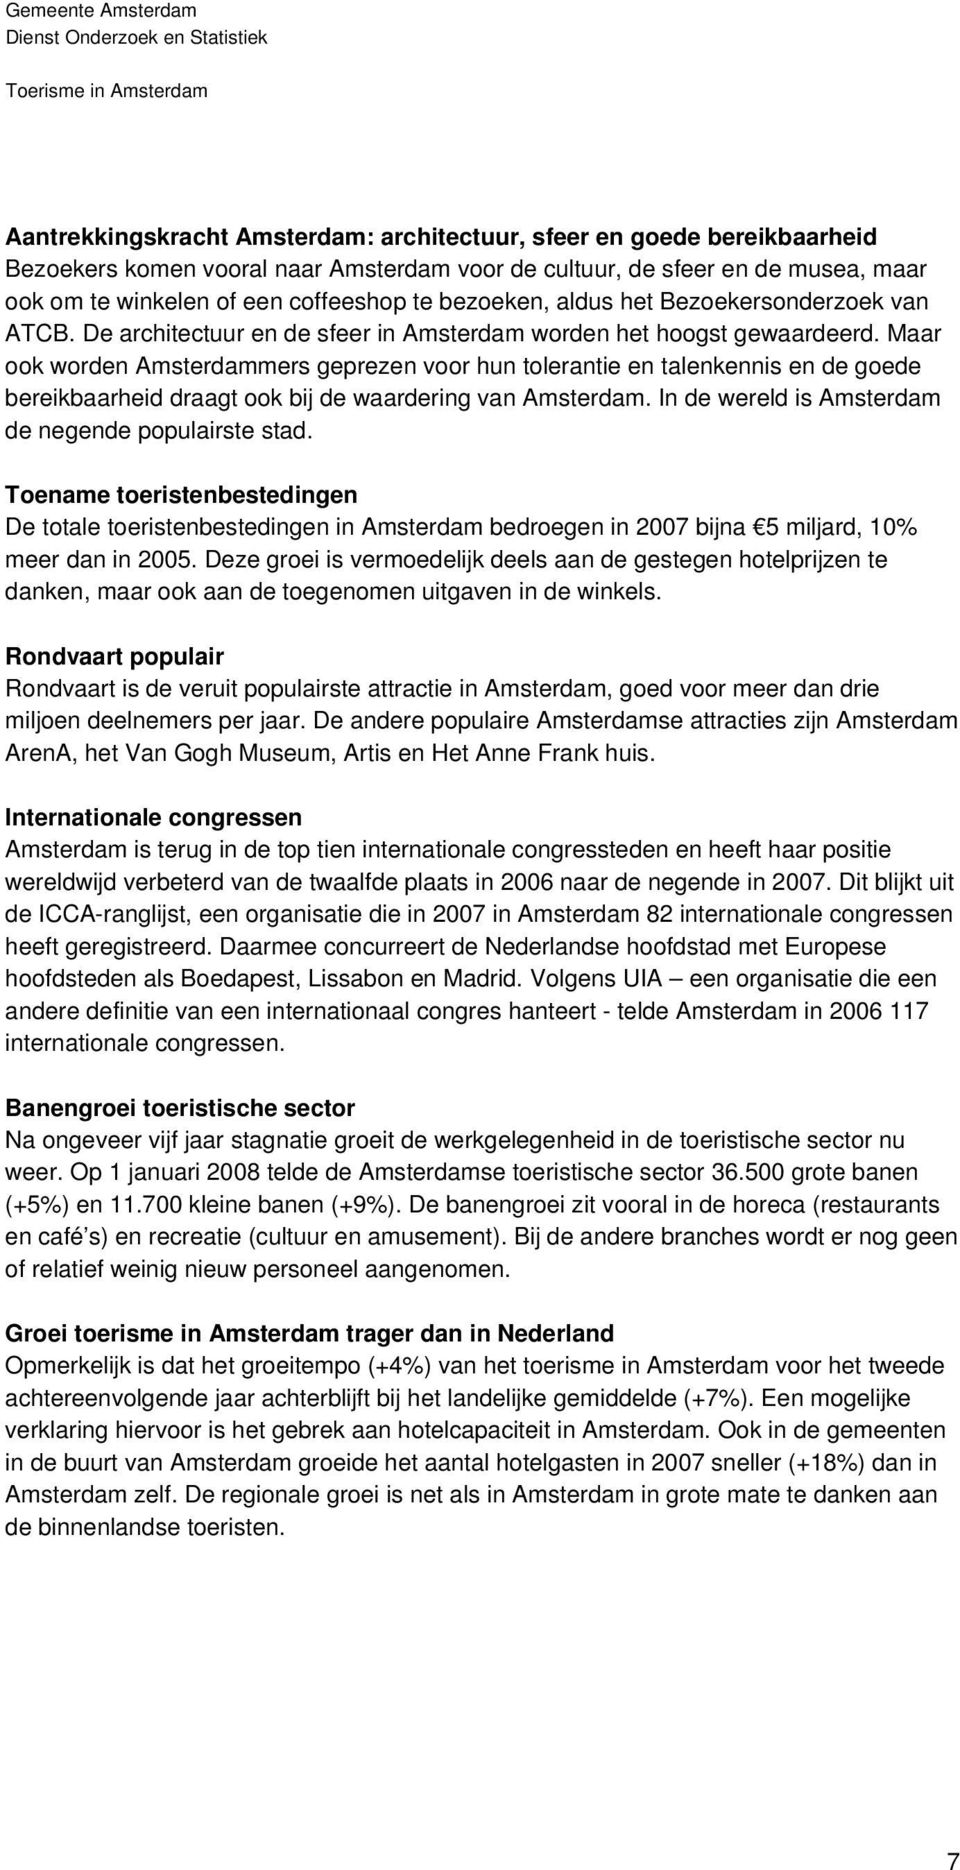 Maar ook worden Amsterdammers geprezen voor hun tolerantie en talenkennis en de goede bereikbaarheid draagt ook bij de waardering van Amsterdam. In de wereld is Amsterdam de negende populairste stad.